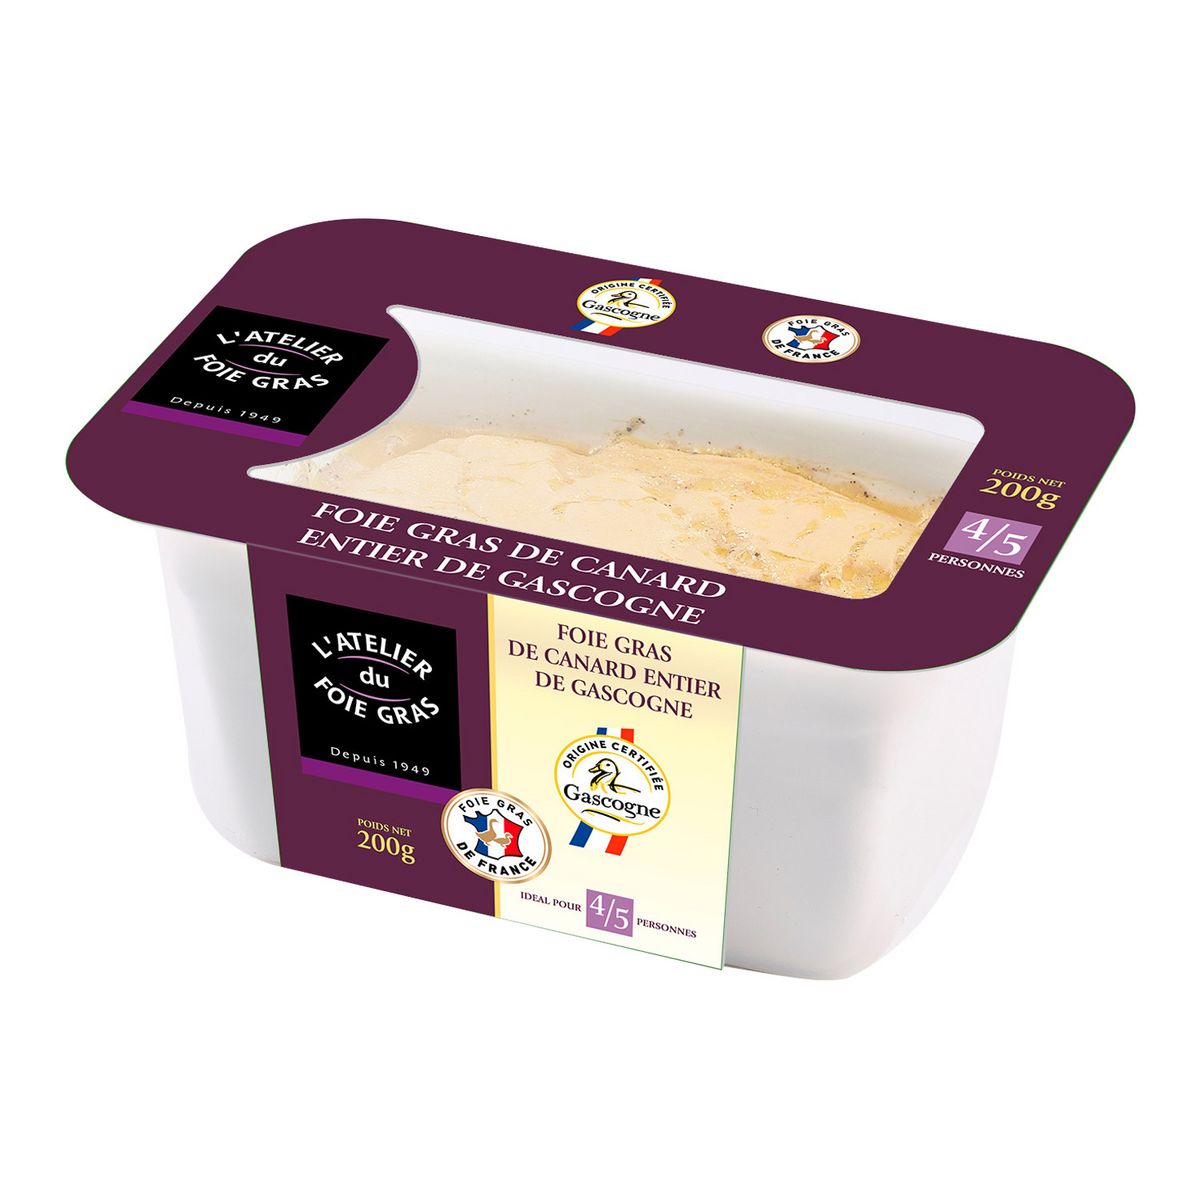 L'ATELIER DU FOIE GRAS Foie gras entier de canard mi-cuit de Gascogne en terrine 4-5 parts 200g